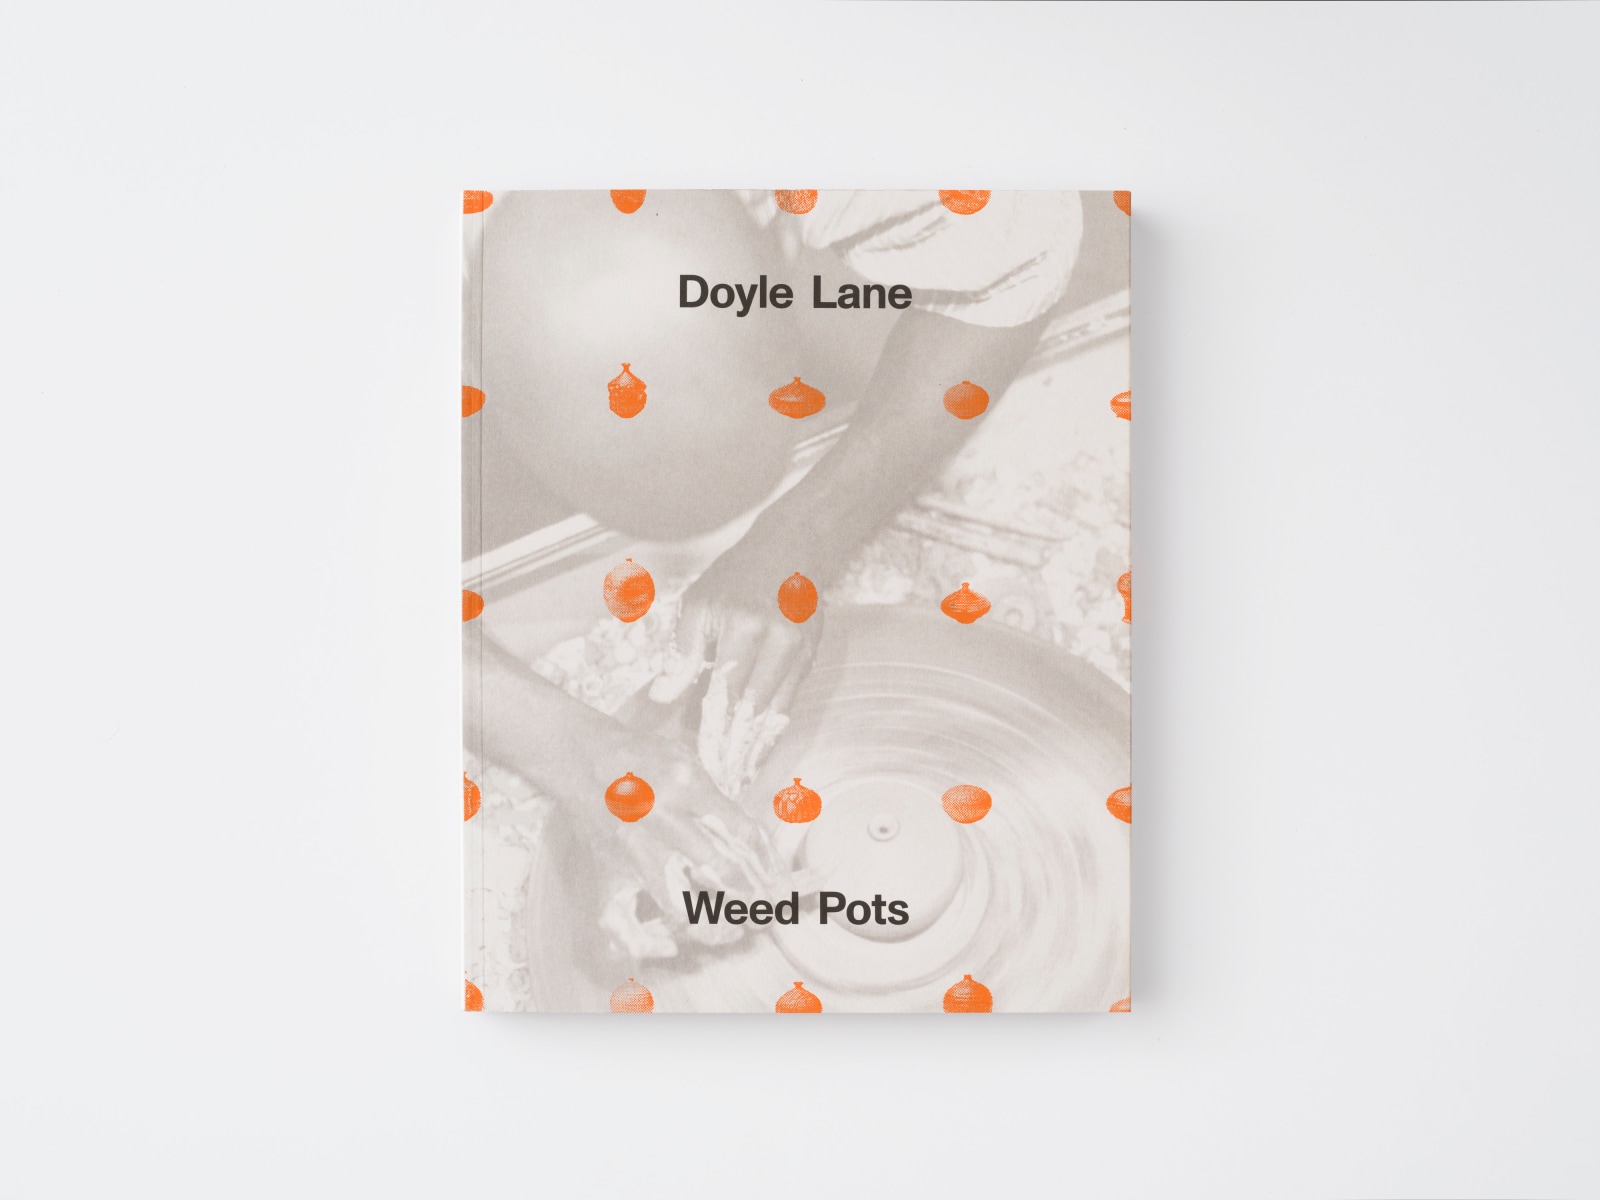 DOYLE LANE: WEED POTS